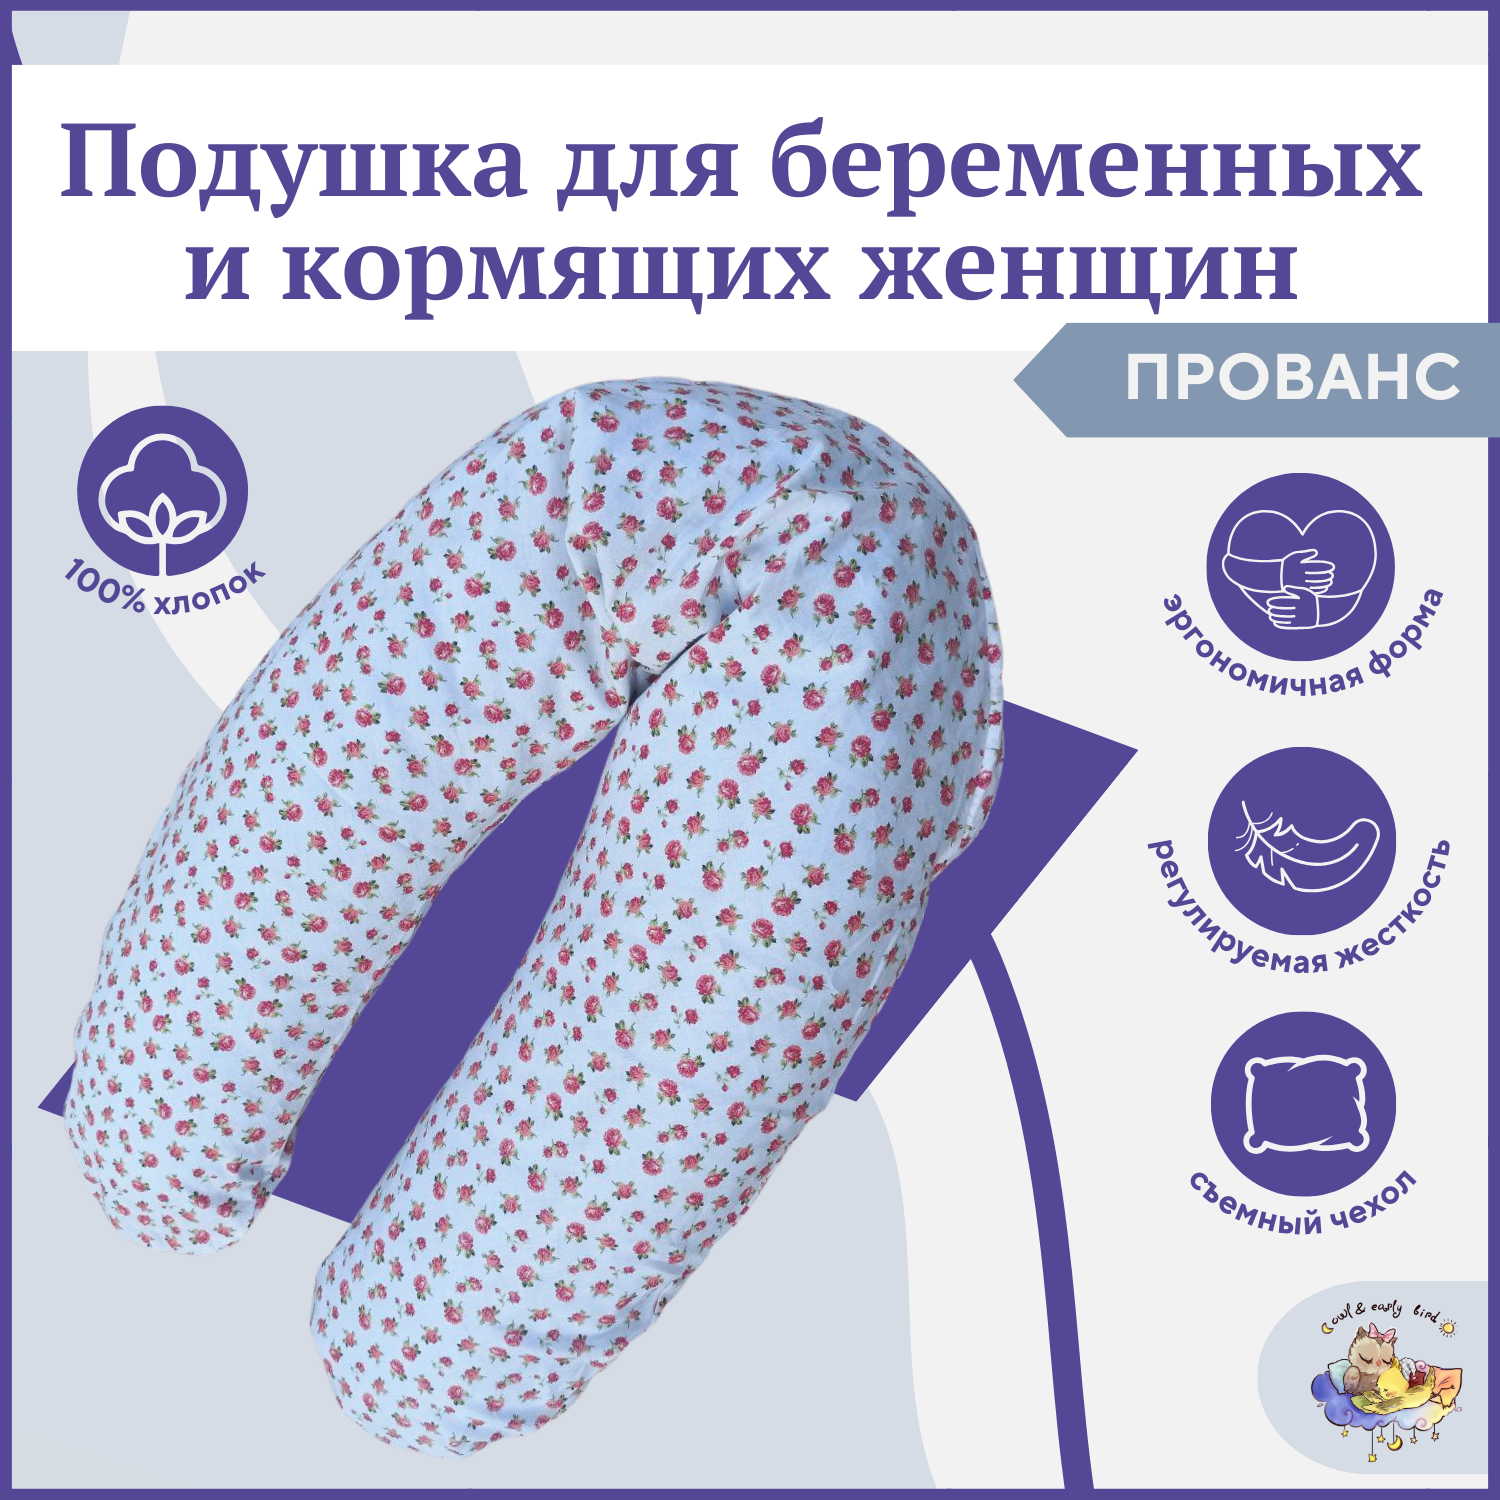 Подушка для беременных и кормящих форма рогалик ТМ Owl EarlyBird Прованс ergofeed подушка для беременных и для кормления новорожденных wedge